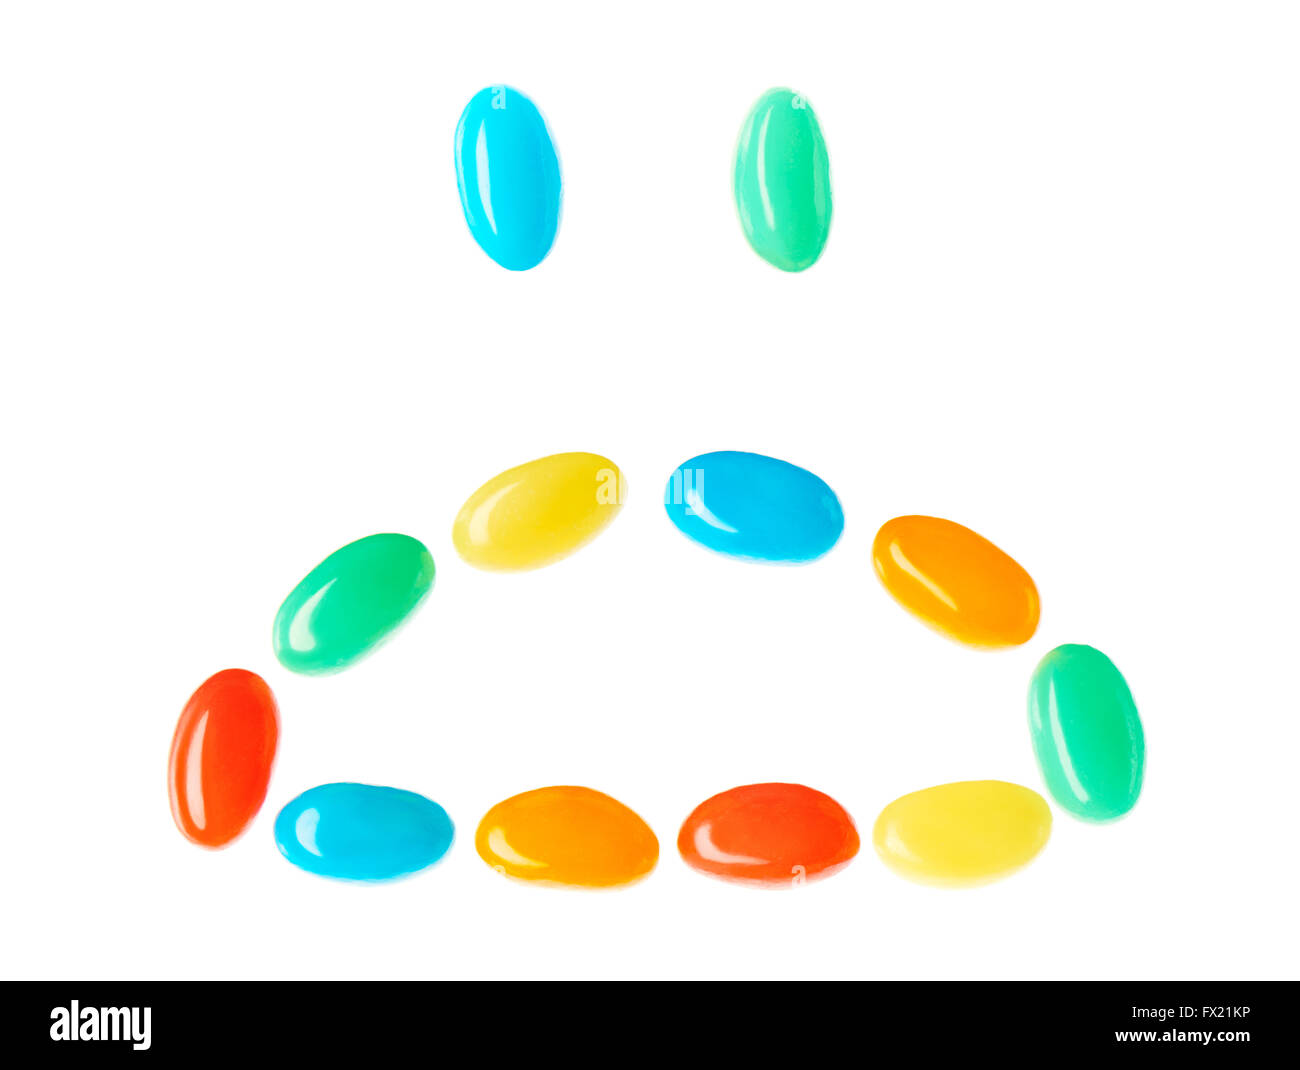 Traurig traurig Smiley gemacht von bunten Bonbons, die isoliert auf weißem Hintergrund Stockfoto